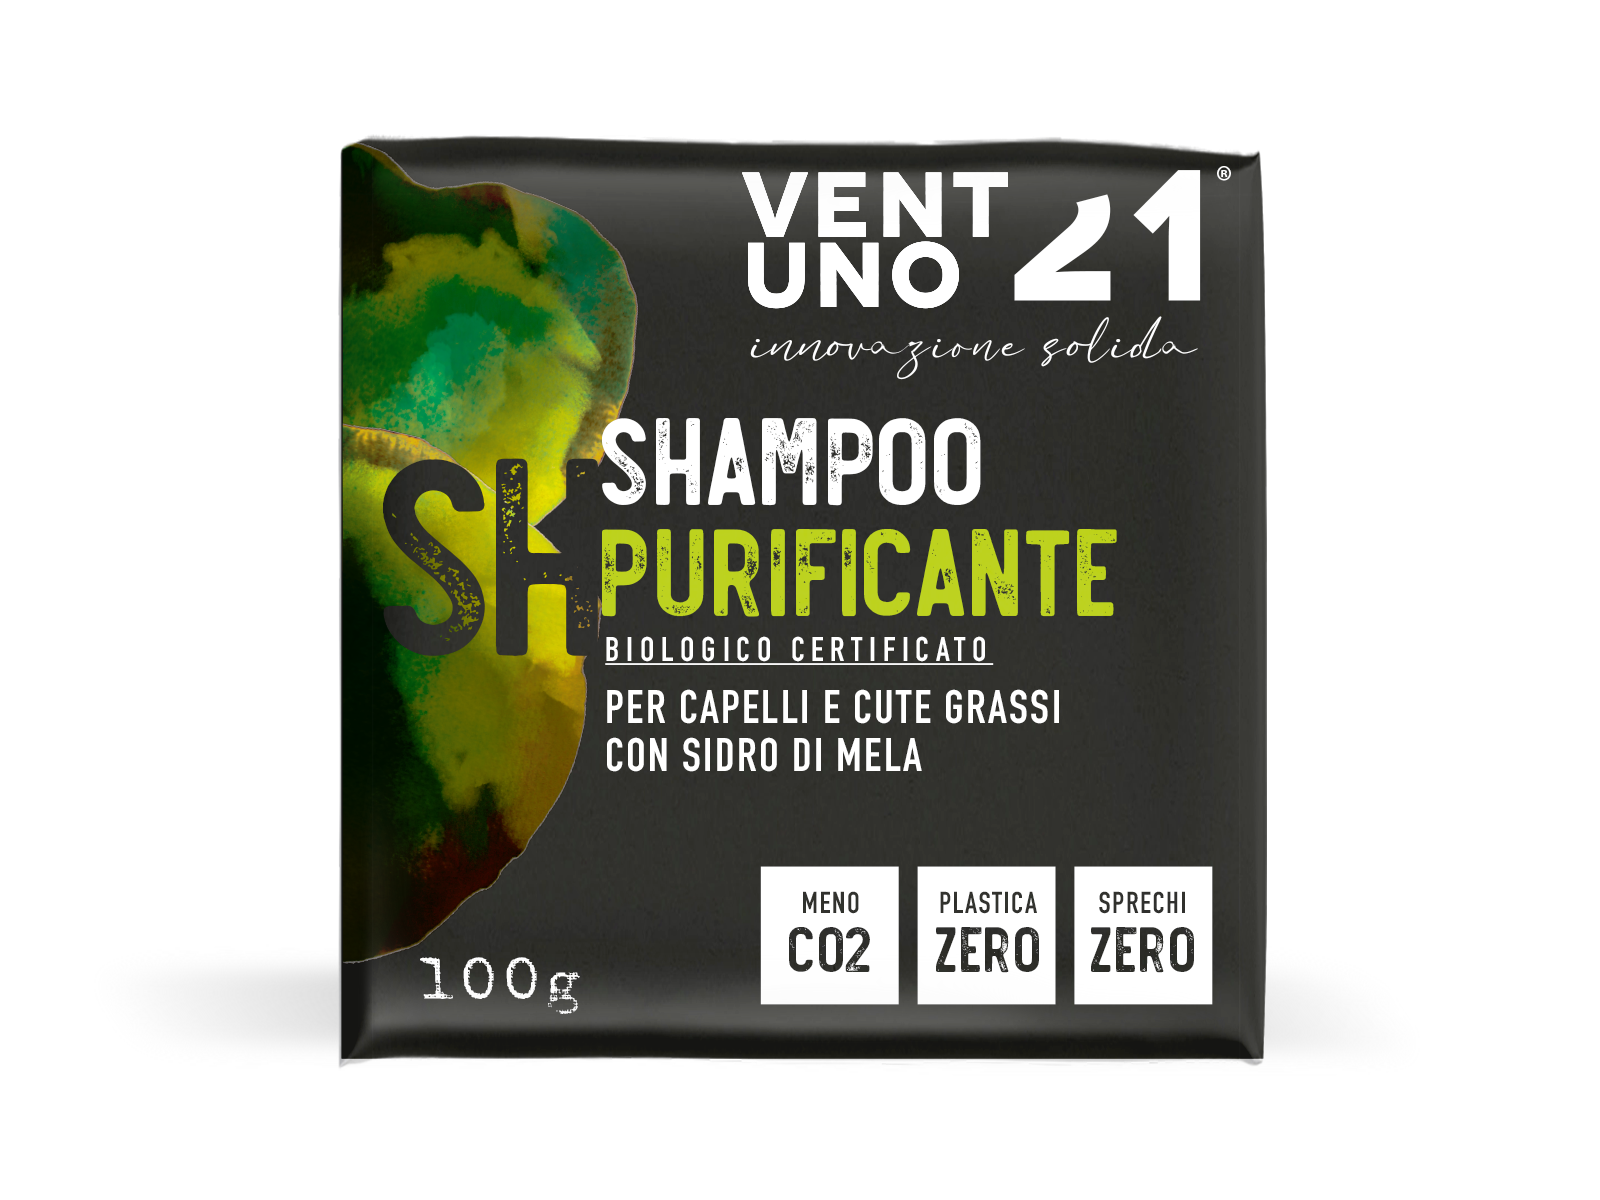 Shampoo purificante